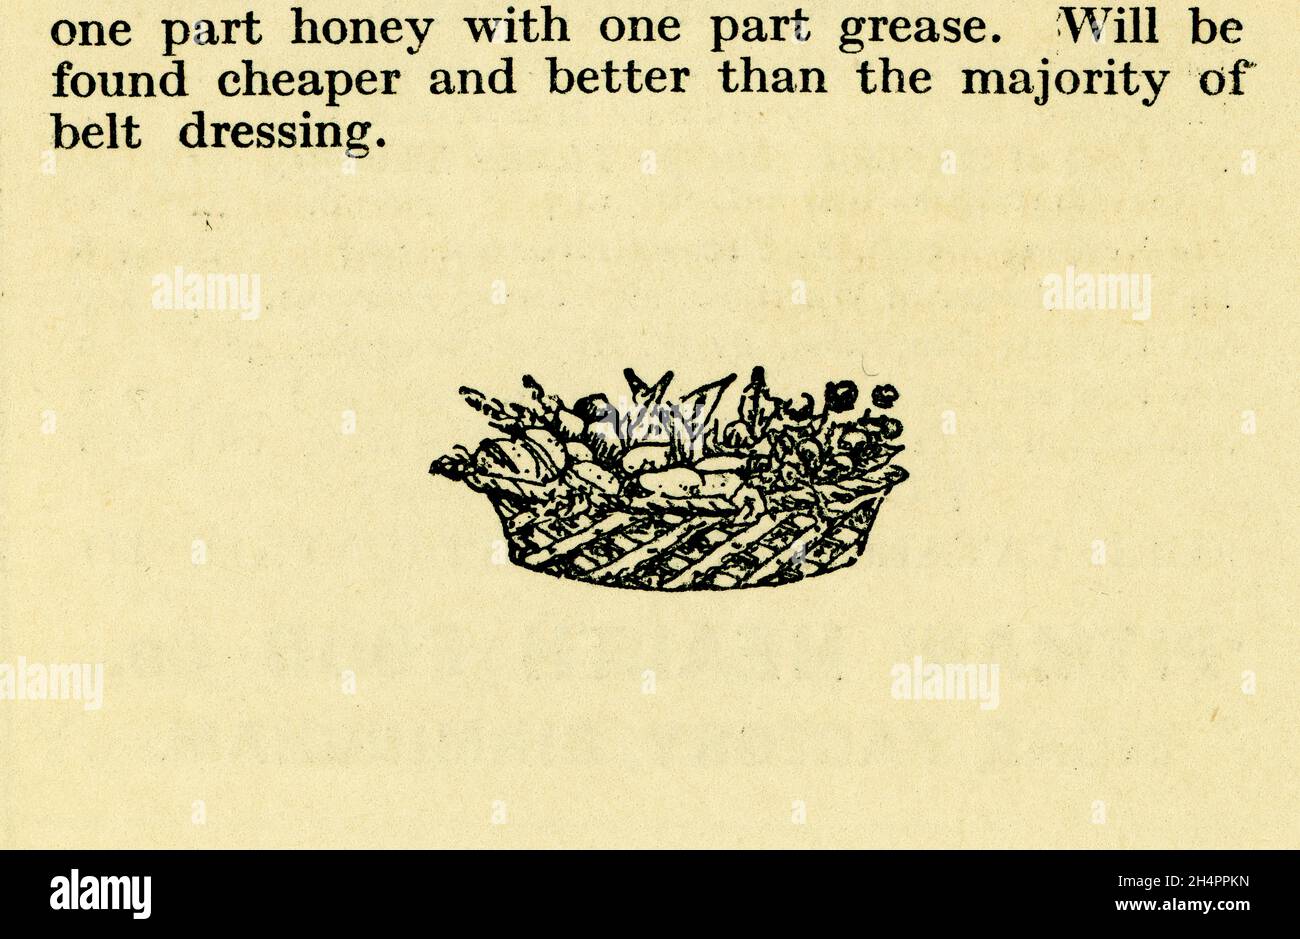 Original sepiafarbene Buchteller Fußnote in einer gesunden Ernährung Broschürengravur - Korb mit Gemüse plus Text - Gesundheit aus der Lebensmittelbibliothek Nr. 12, - aus der Serie Honey and the Bee, von James Henry Cook, veröffentlicht 1927, Birmingham, England, Großbritannien Stockfoto